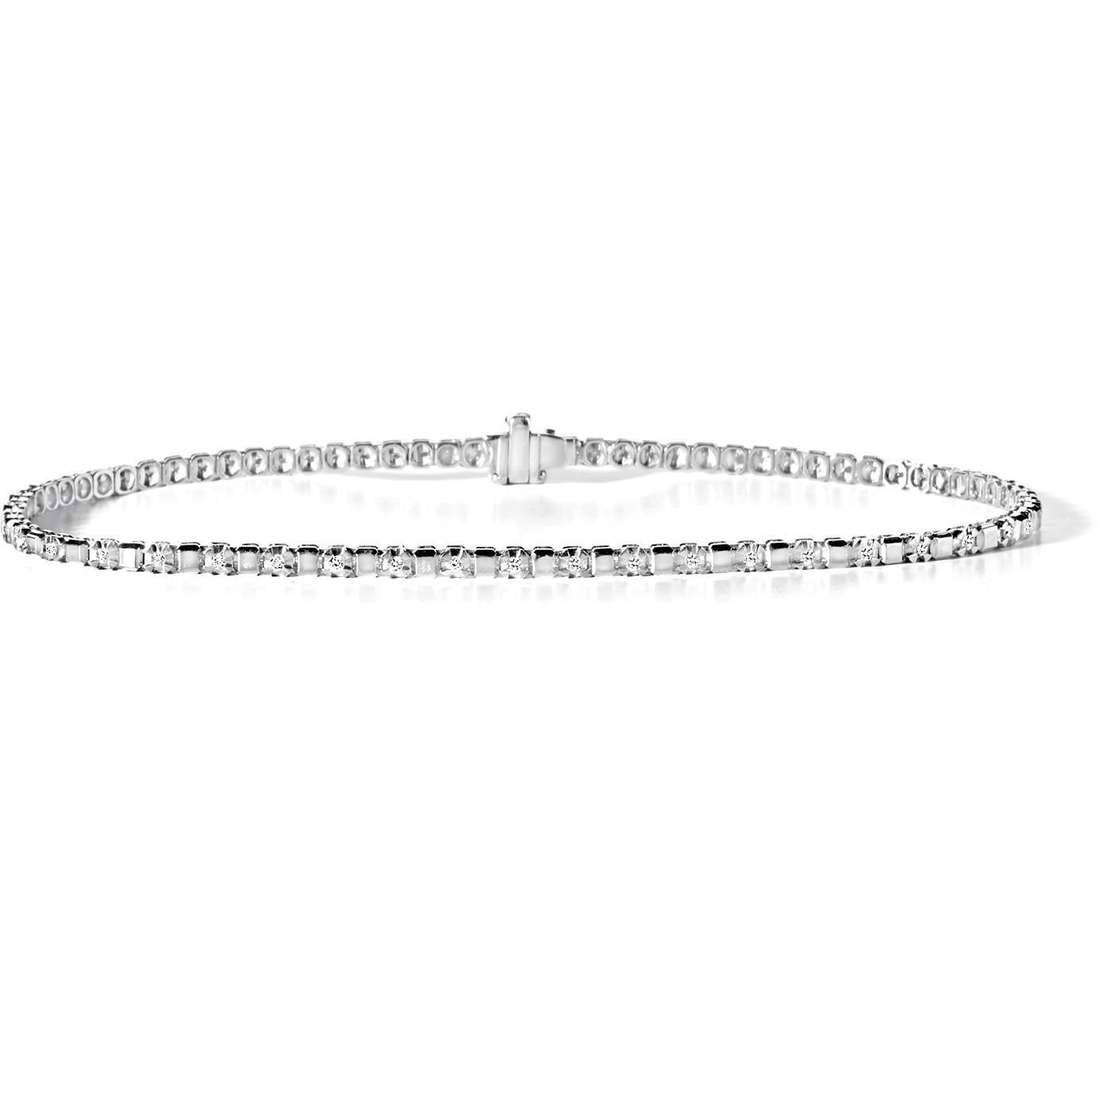 Men’s Bracelet Tennis Jewelry UBR 556 M20